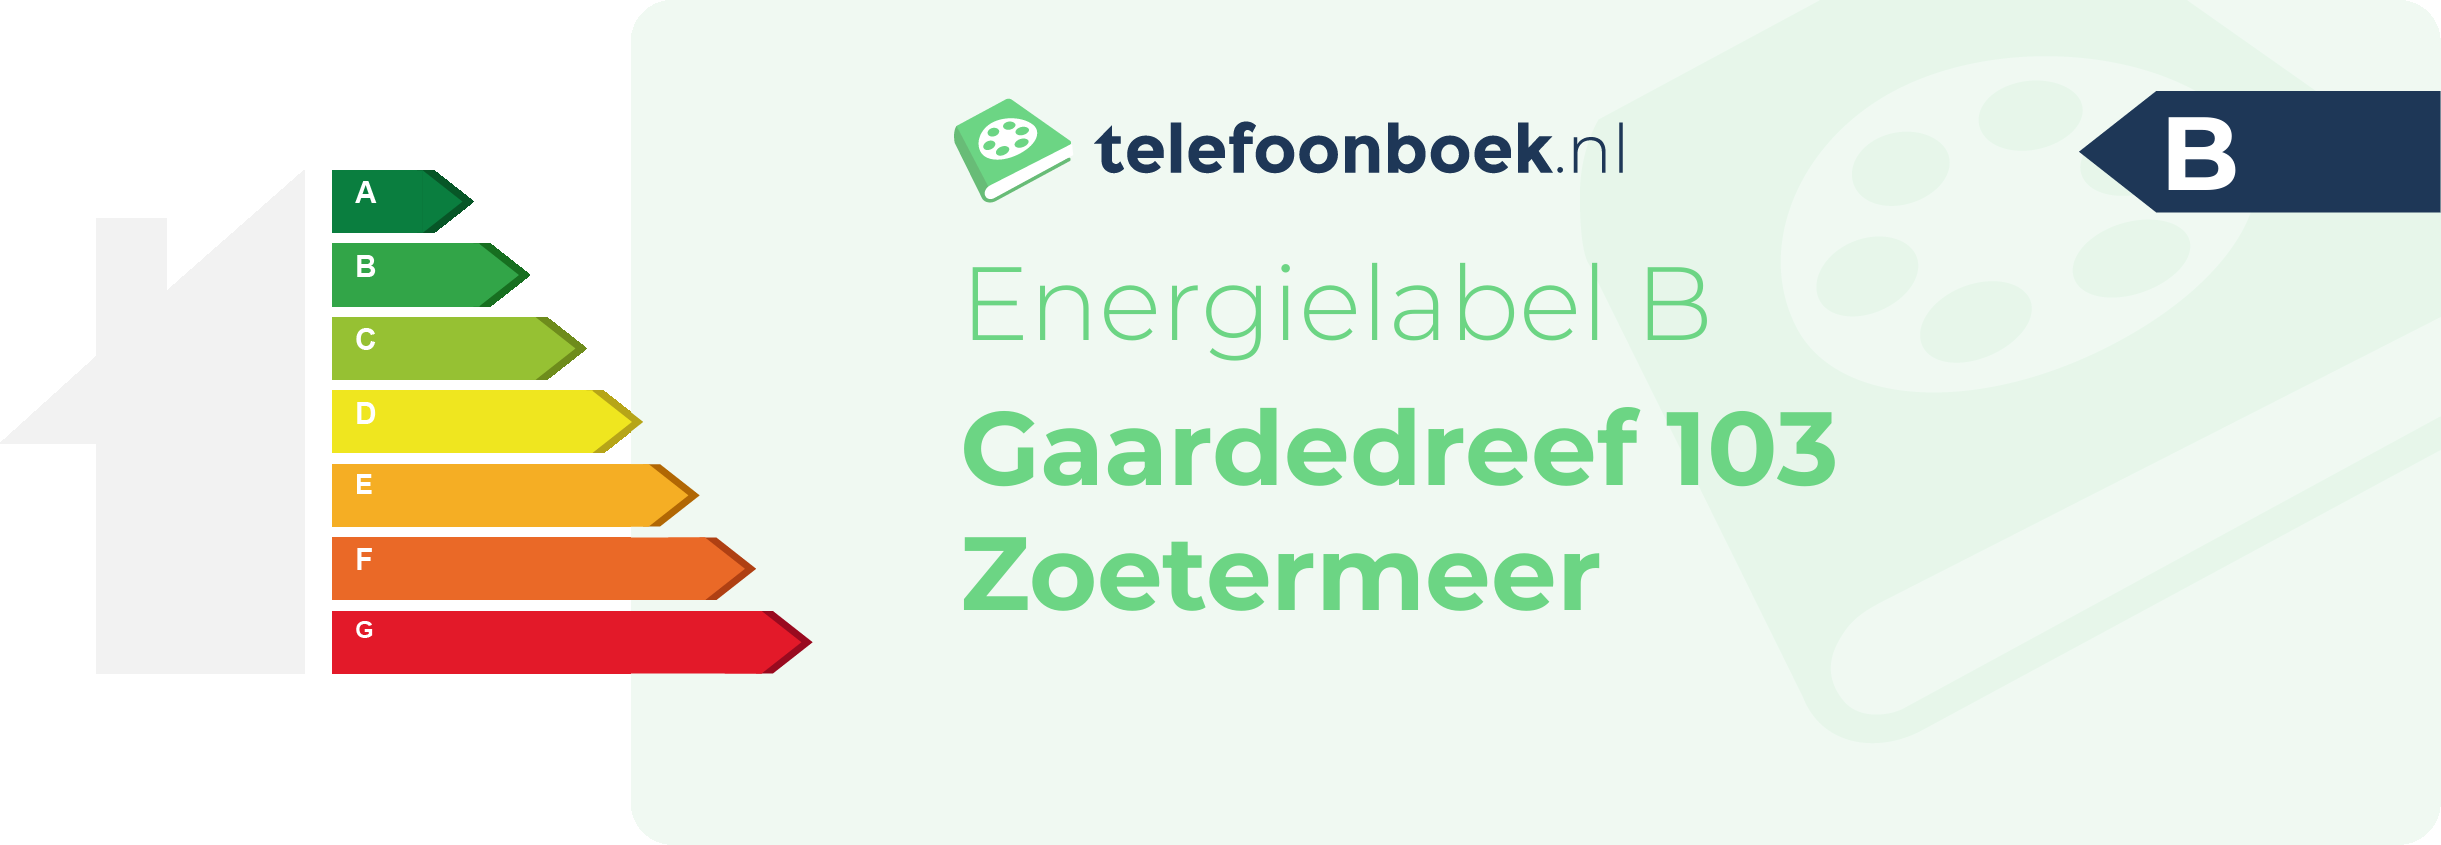 Energielabel Gaardedreef 103 Zoetermeer